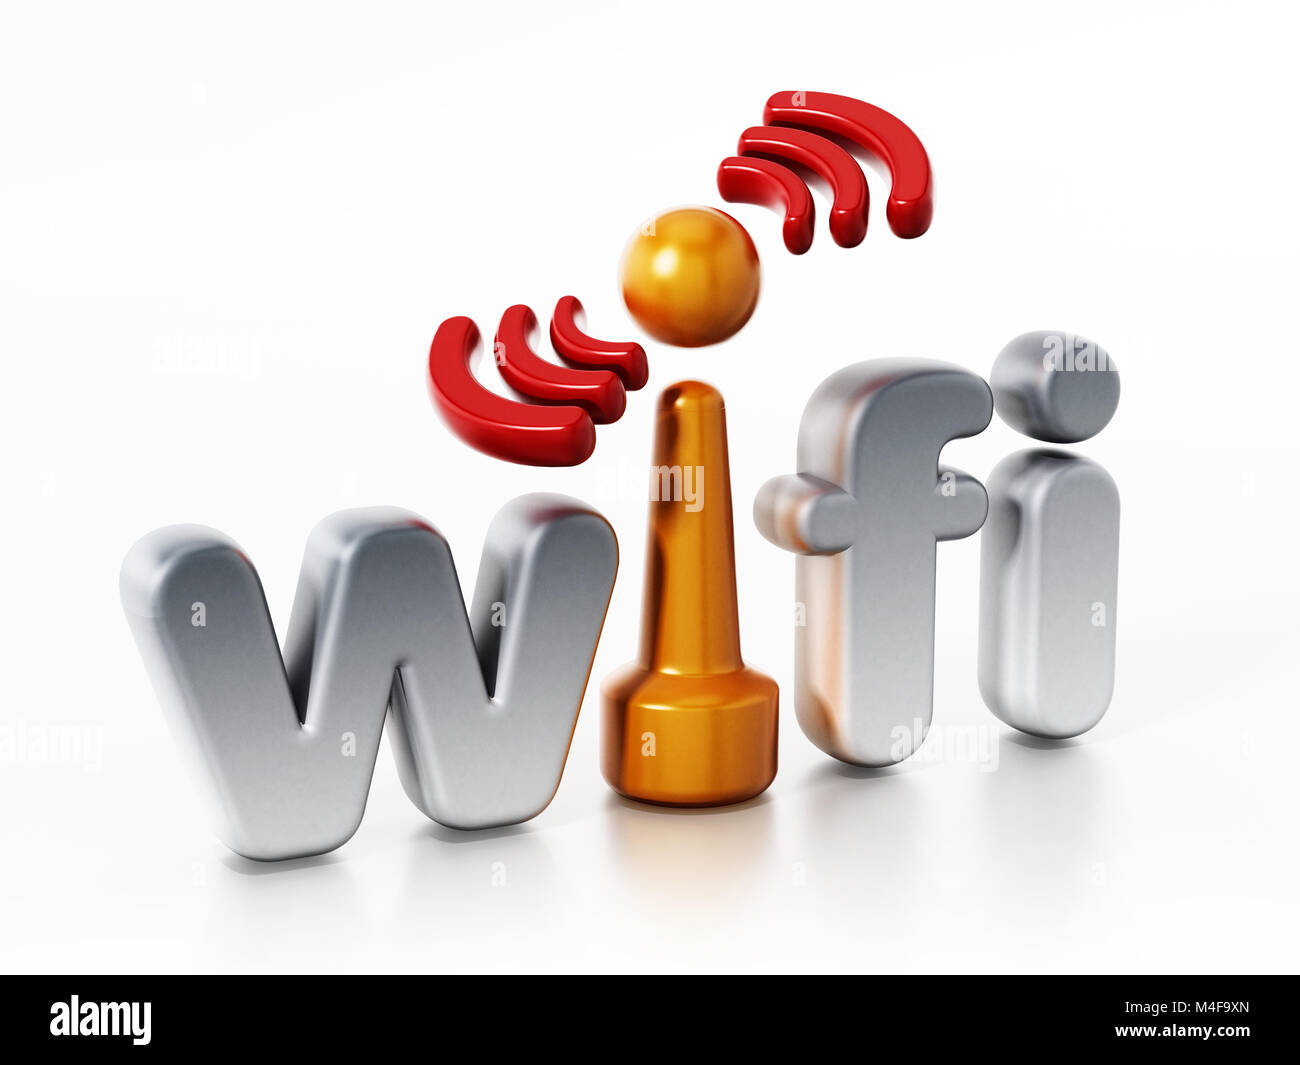 Logotipo de wifi y símbolo de conexión inalámbrica. Ilustración 3D. Foto de stock